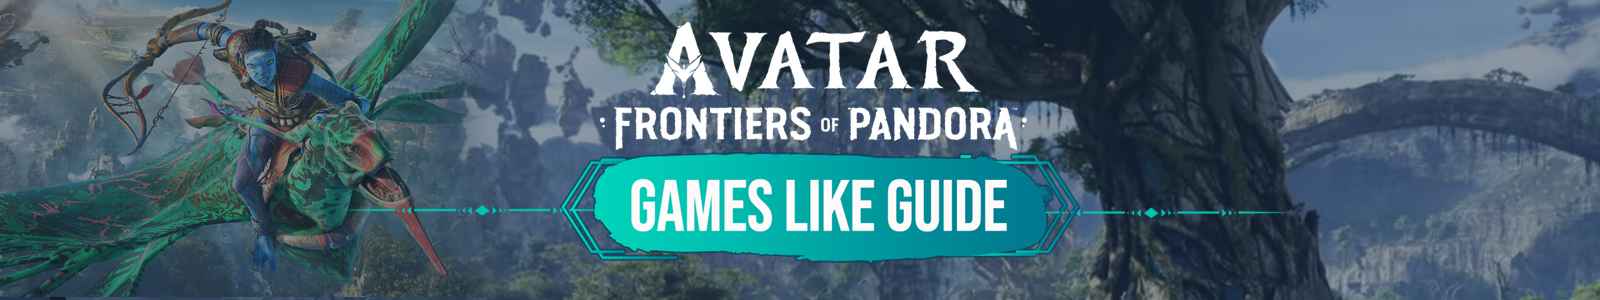 Guía de juegos similares a Avatar Frontiers of Pandora